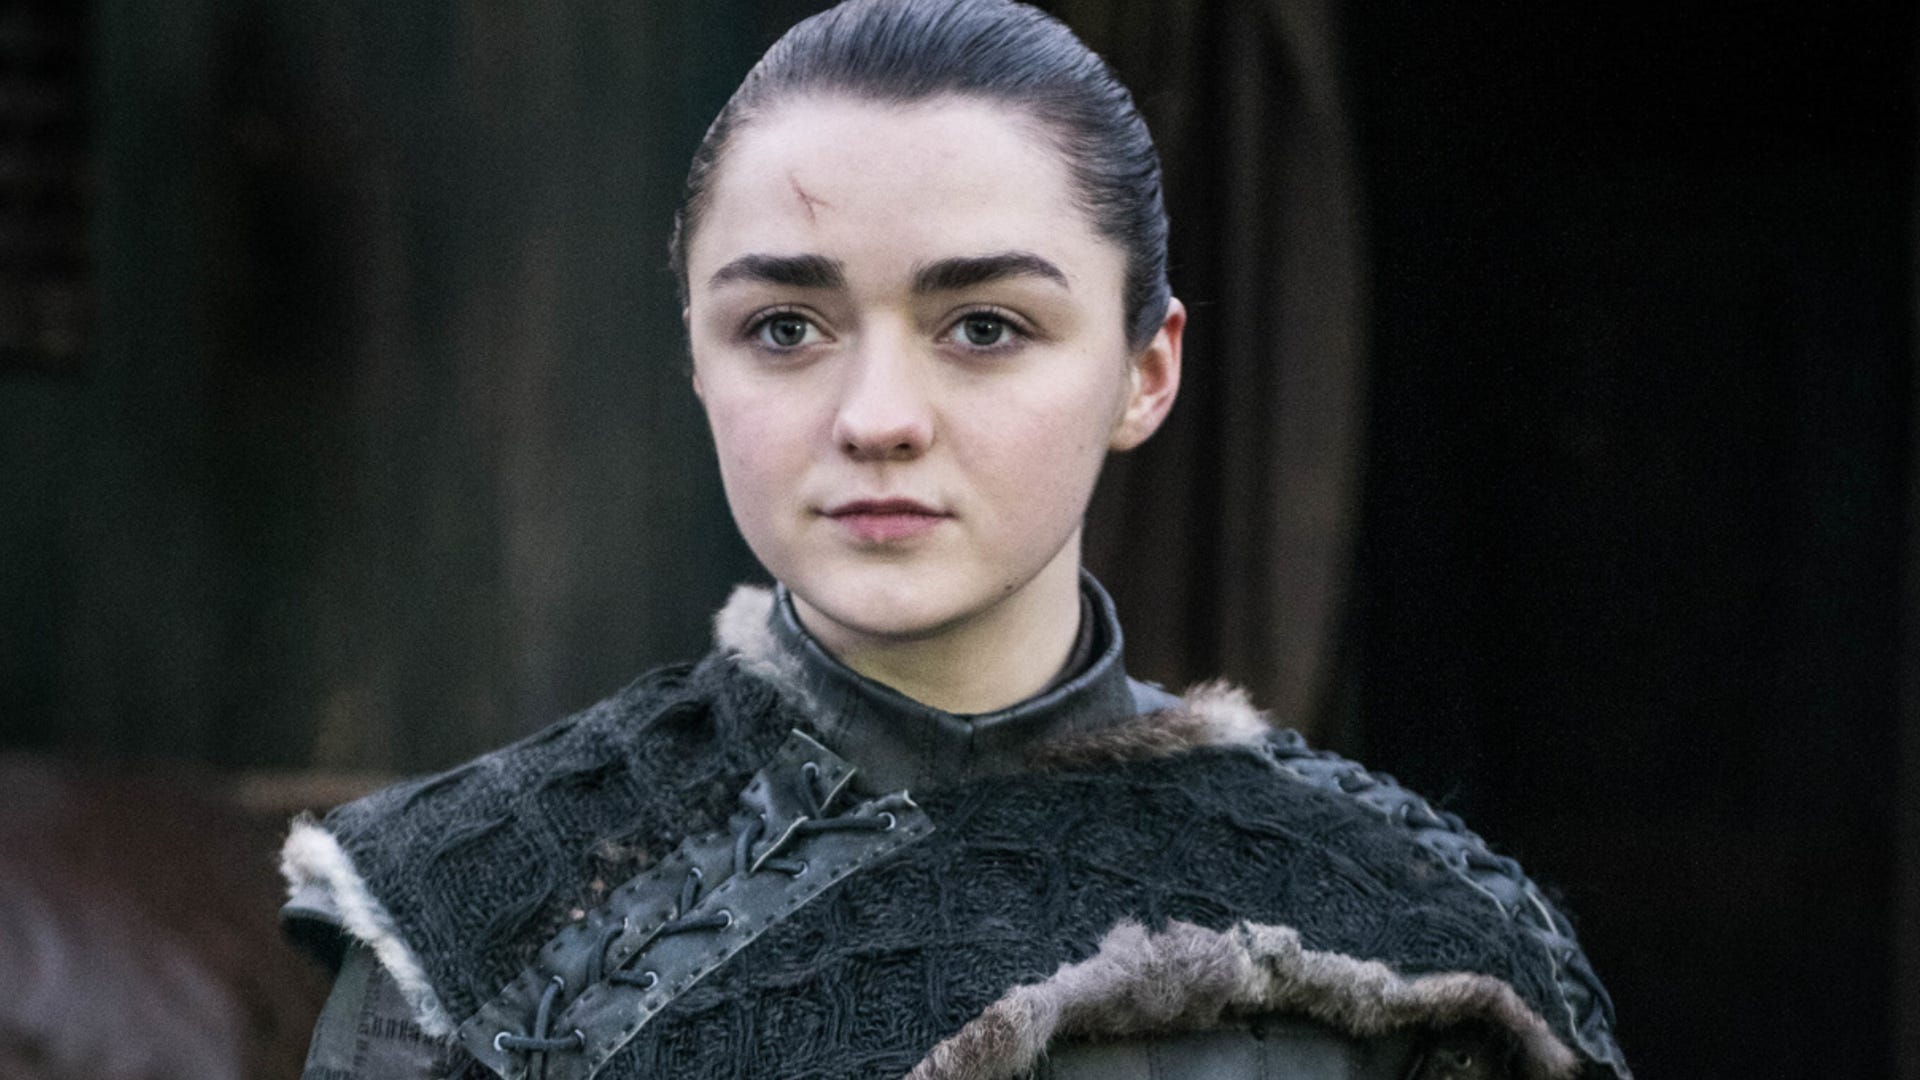 ​Arya Stark (Maisie Williams) on Game of Thrones Season 8, Episode 6: "The Iron Throne"